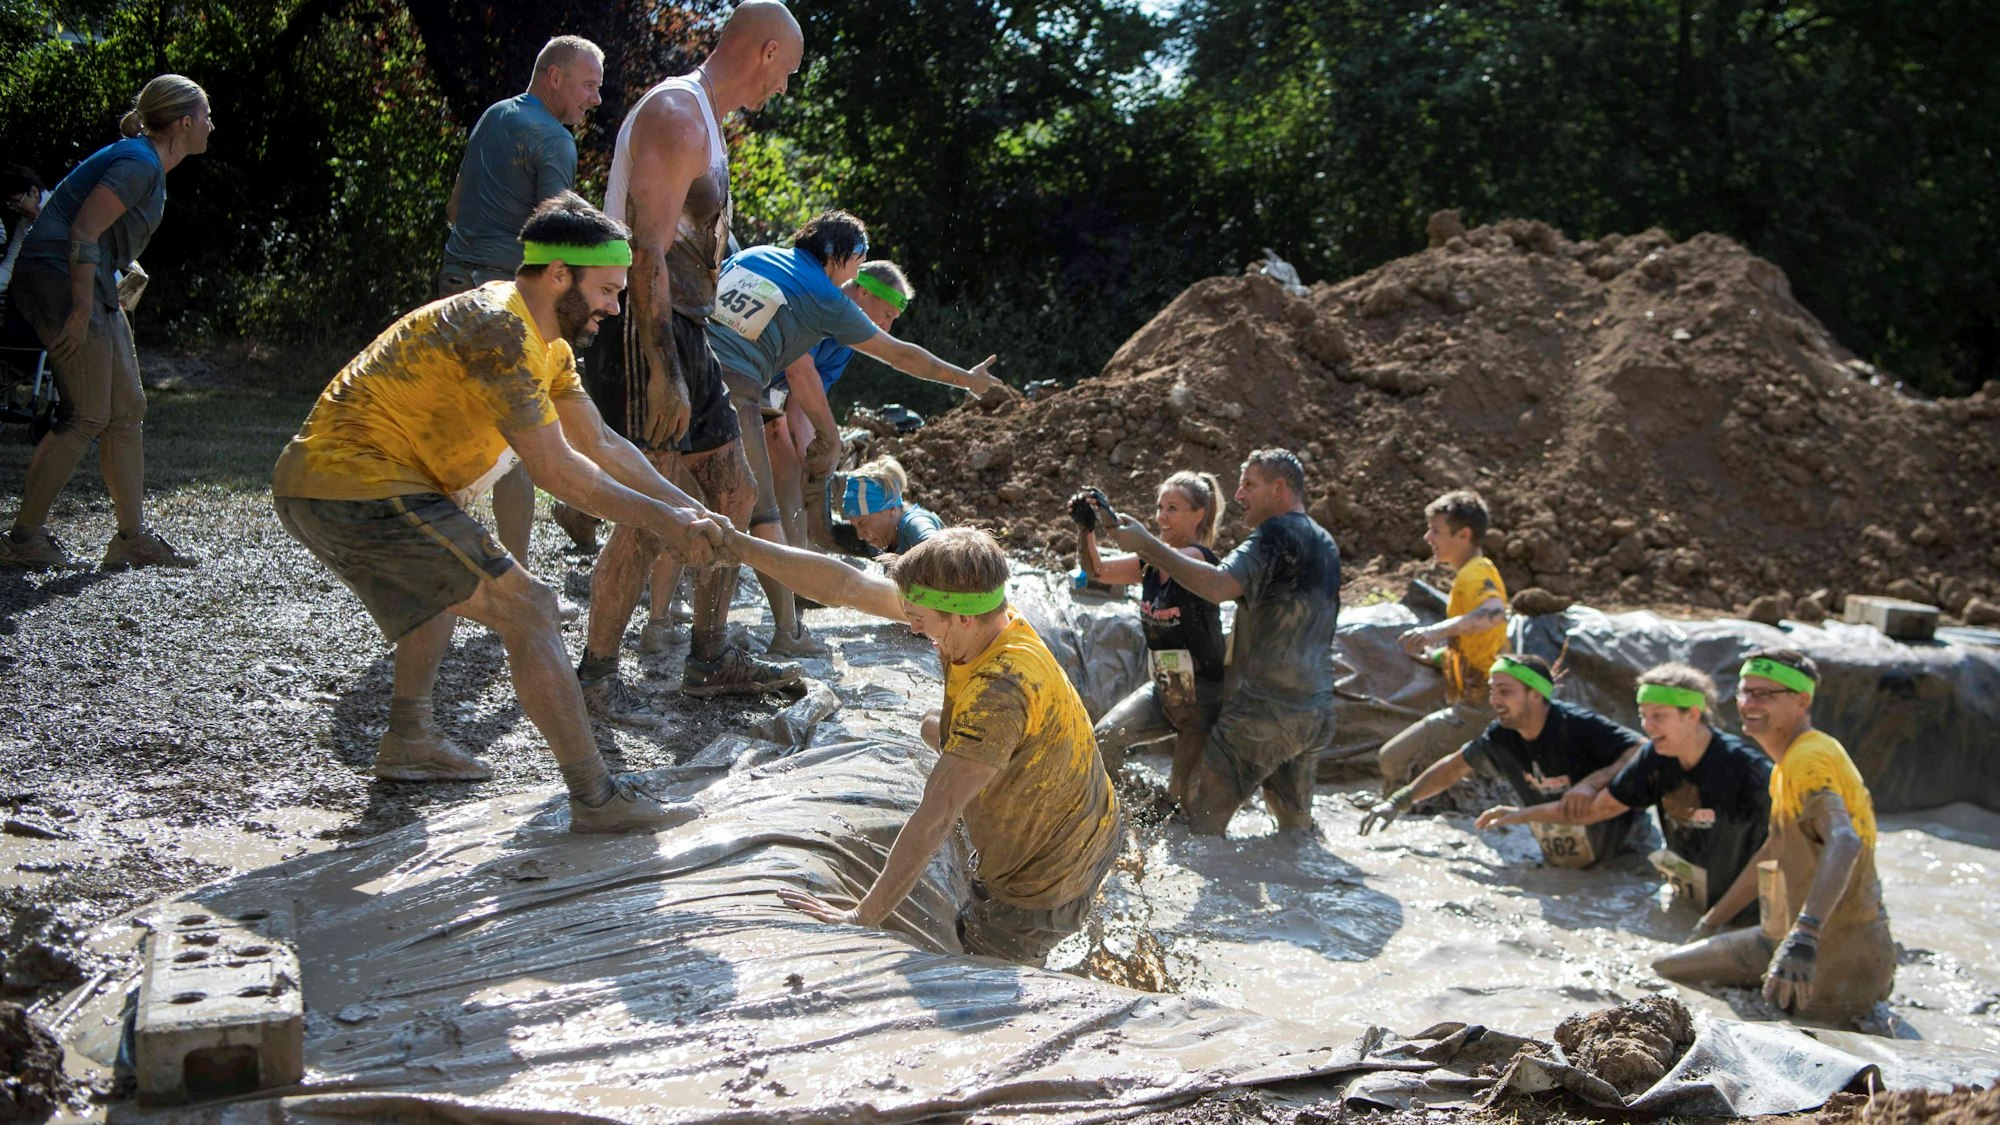 Das Bild zeigt ein Hindernis beim Max-Buddels-Lauf. Auf einem mit Wasser gefüllten Graben kommen die Teilnehmer einfacher heraus, wenn sie sich helfen.